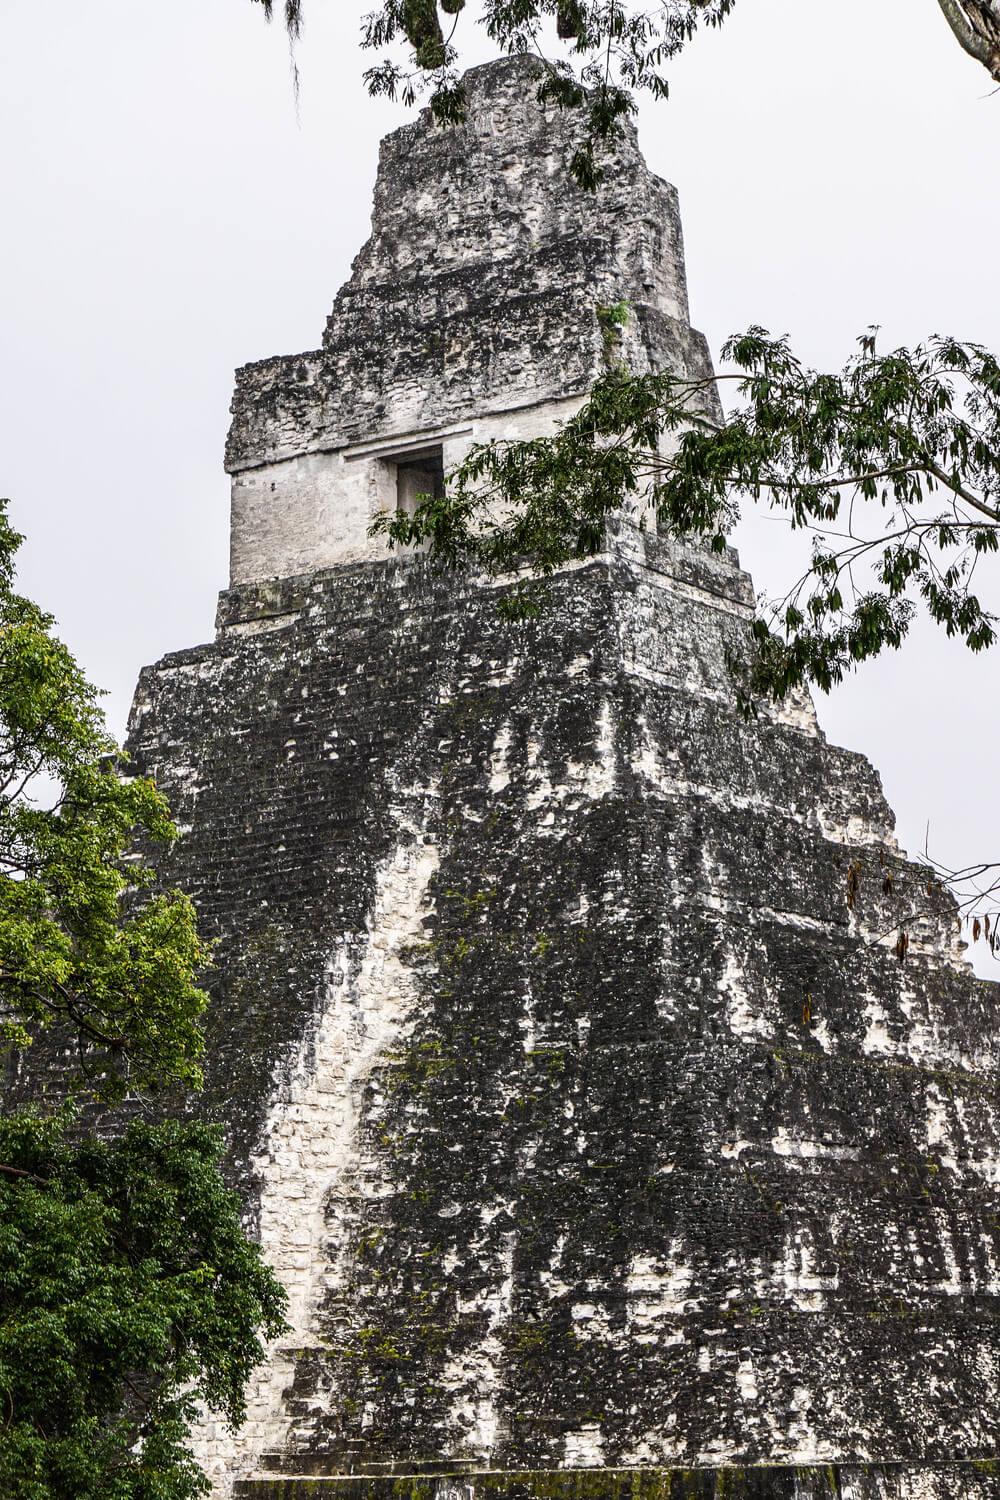 Antigua to Tikal: Mayan structures at Tikal